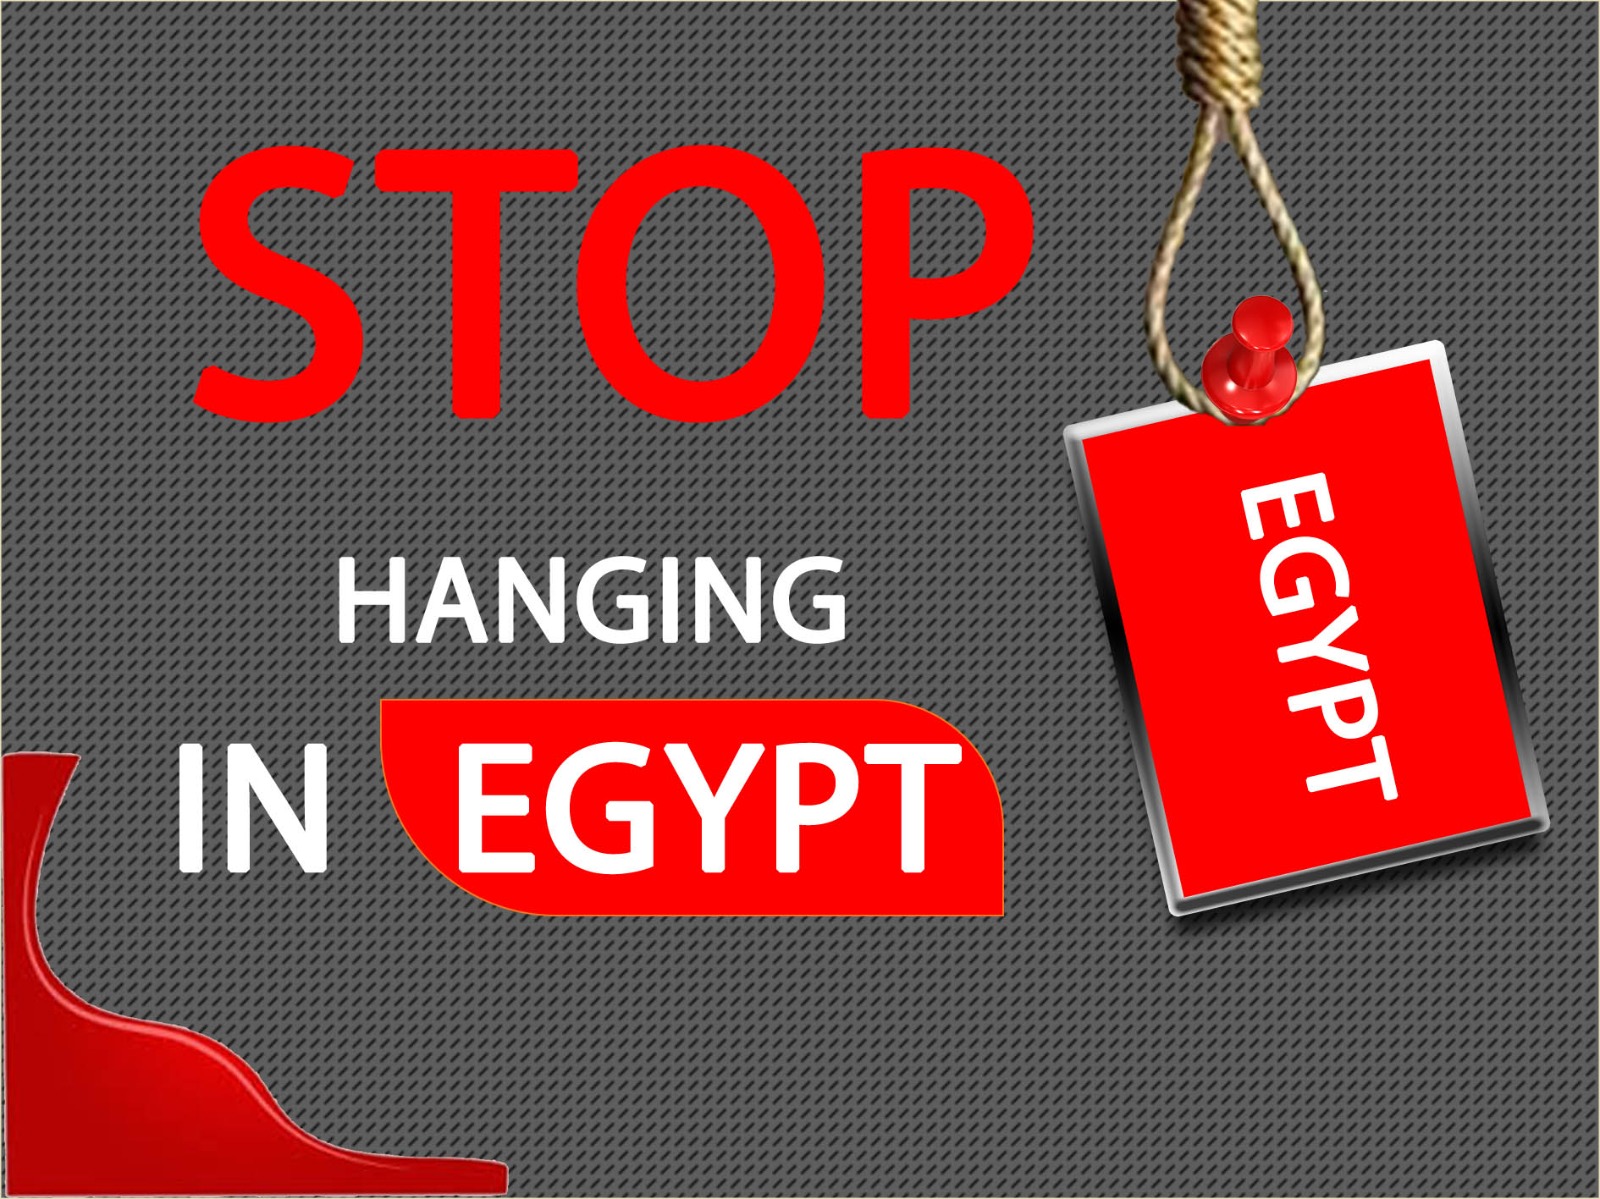 في اليوم الثامن : منظمات دولية تدعم اعتصام نشطاء مصريين في حملة أوقفوا الإعدمات